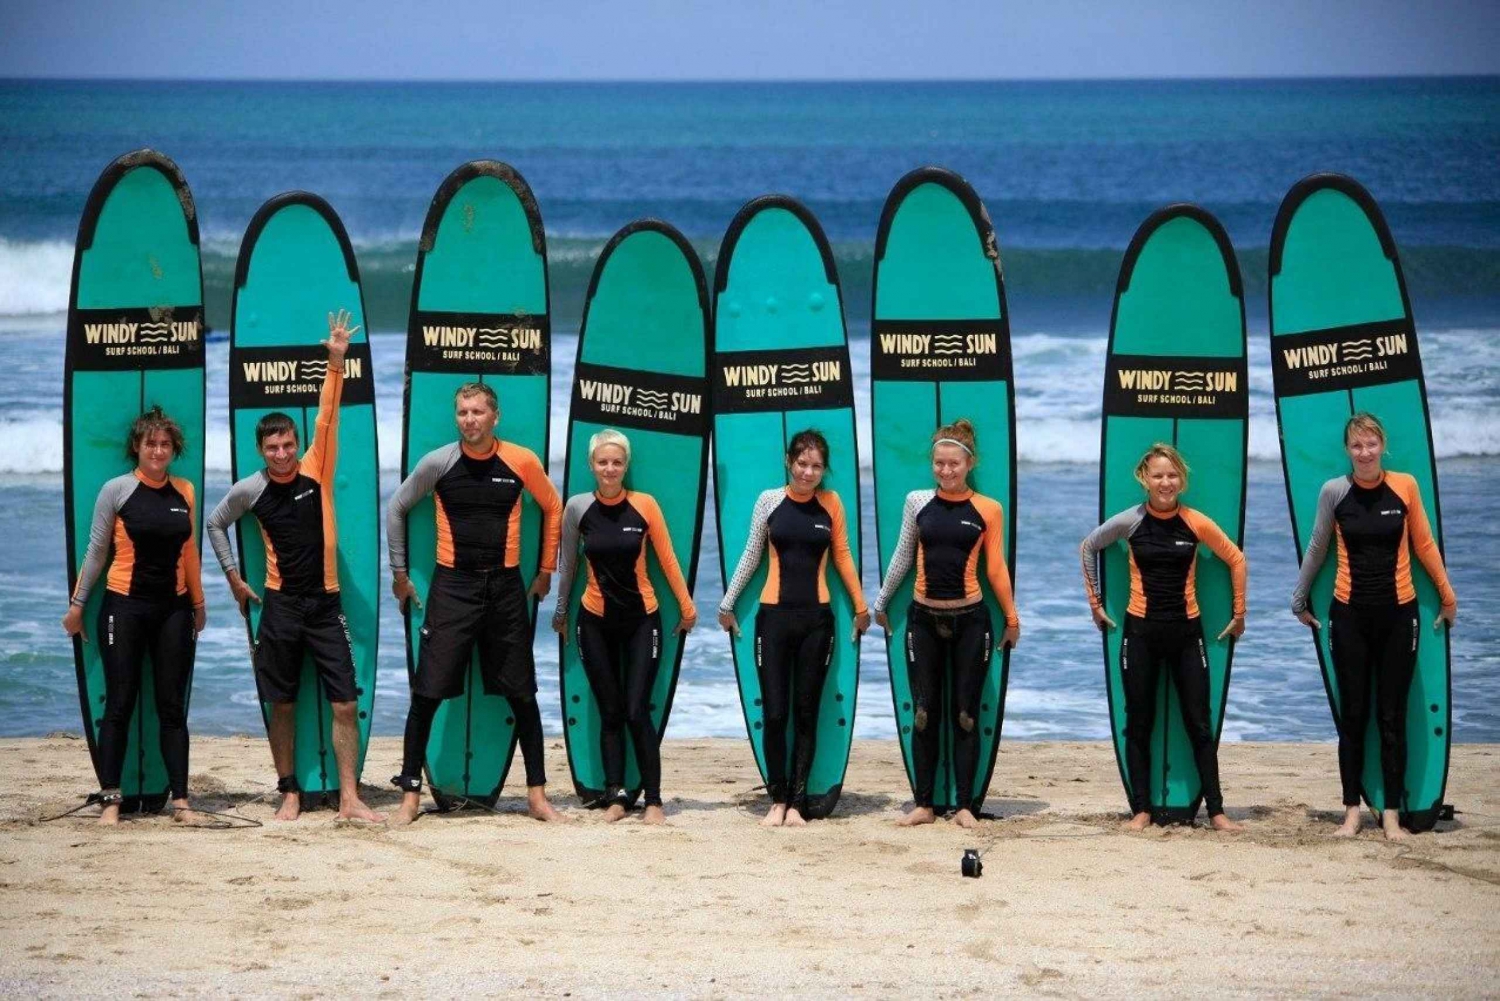 Kuta Beach, Bali: Surfekurs for nybegynnere og viderekomne